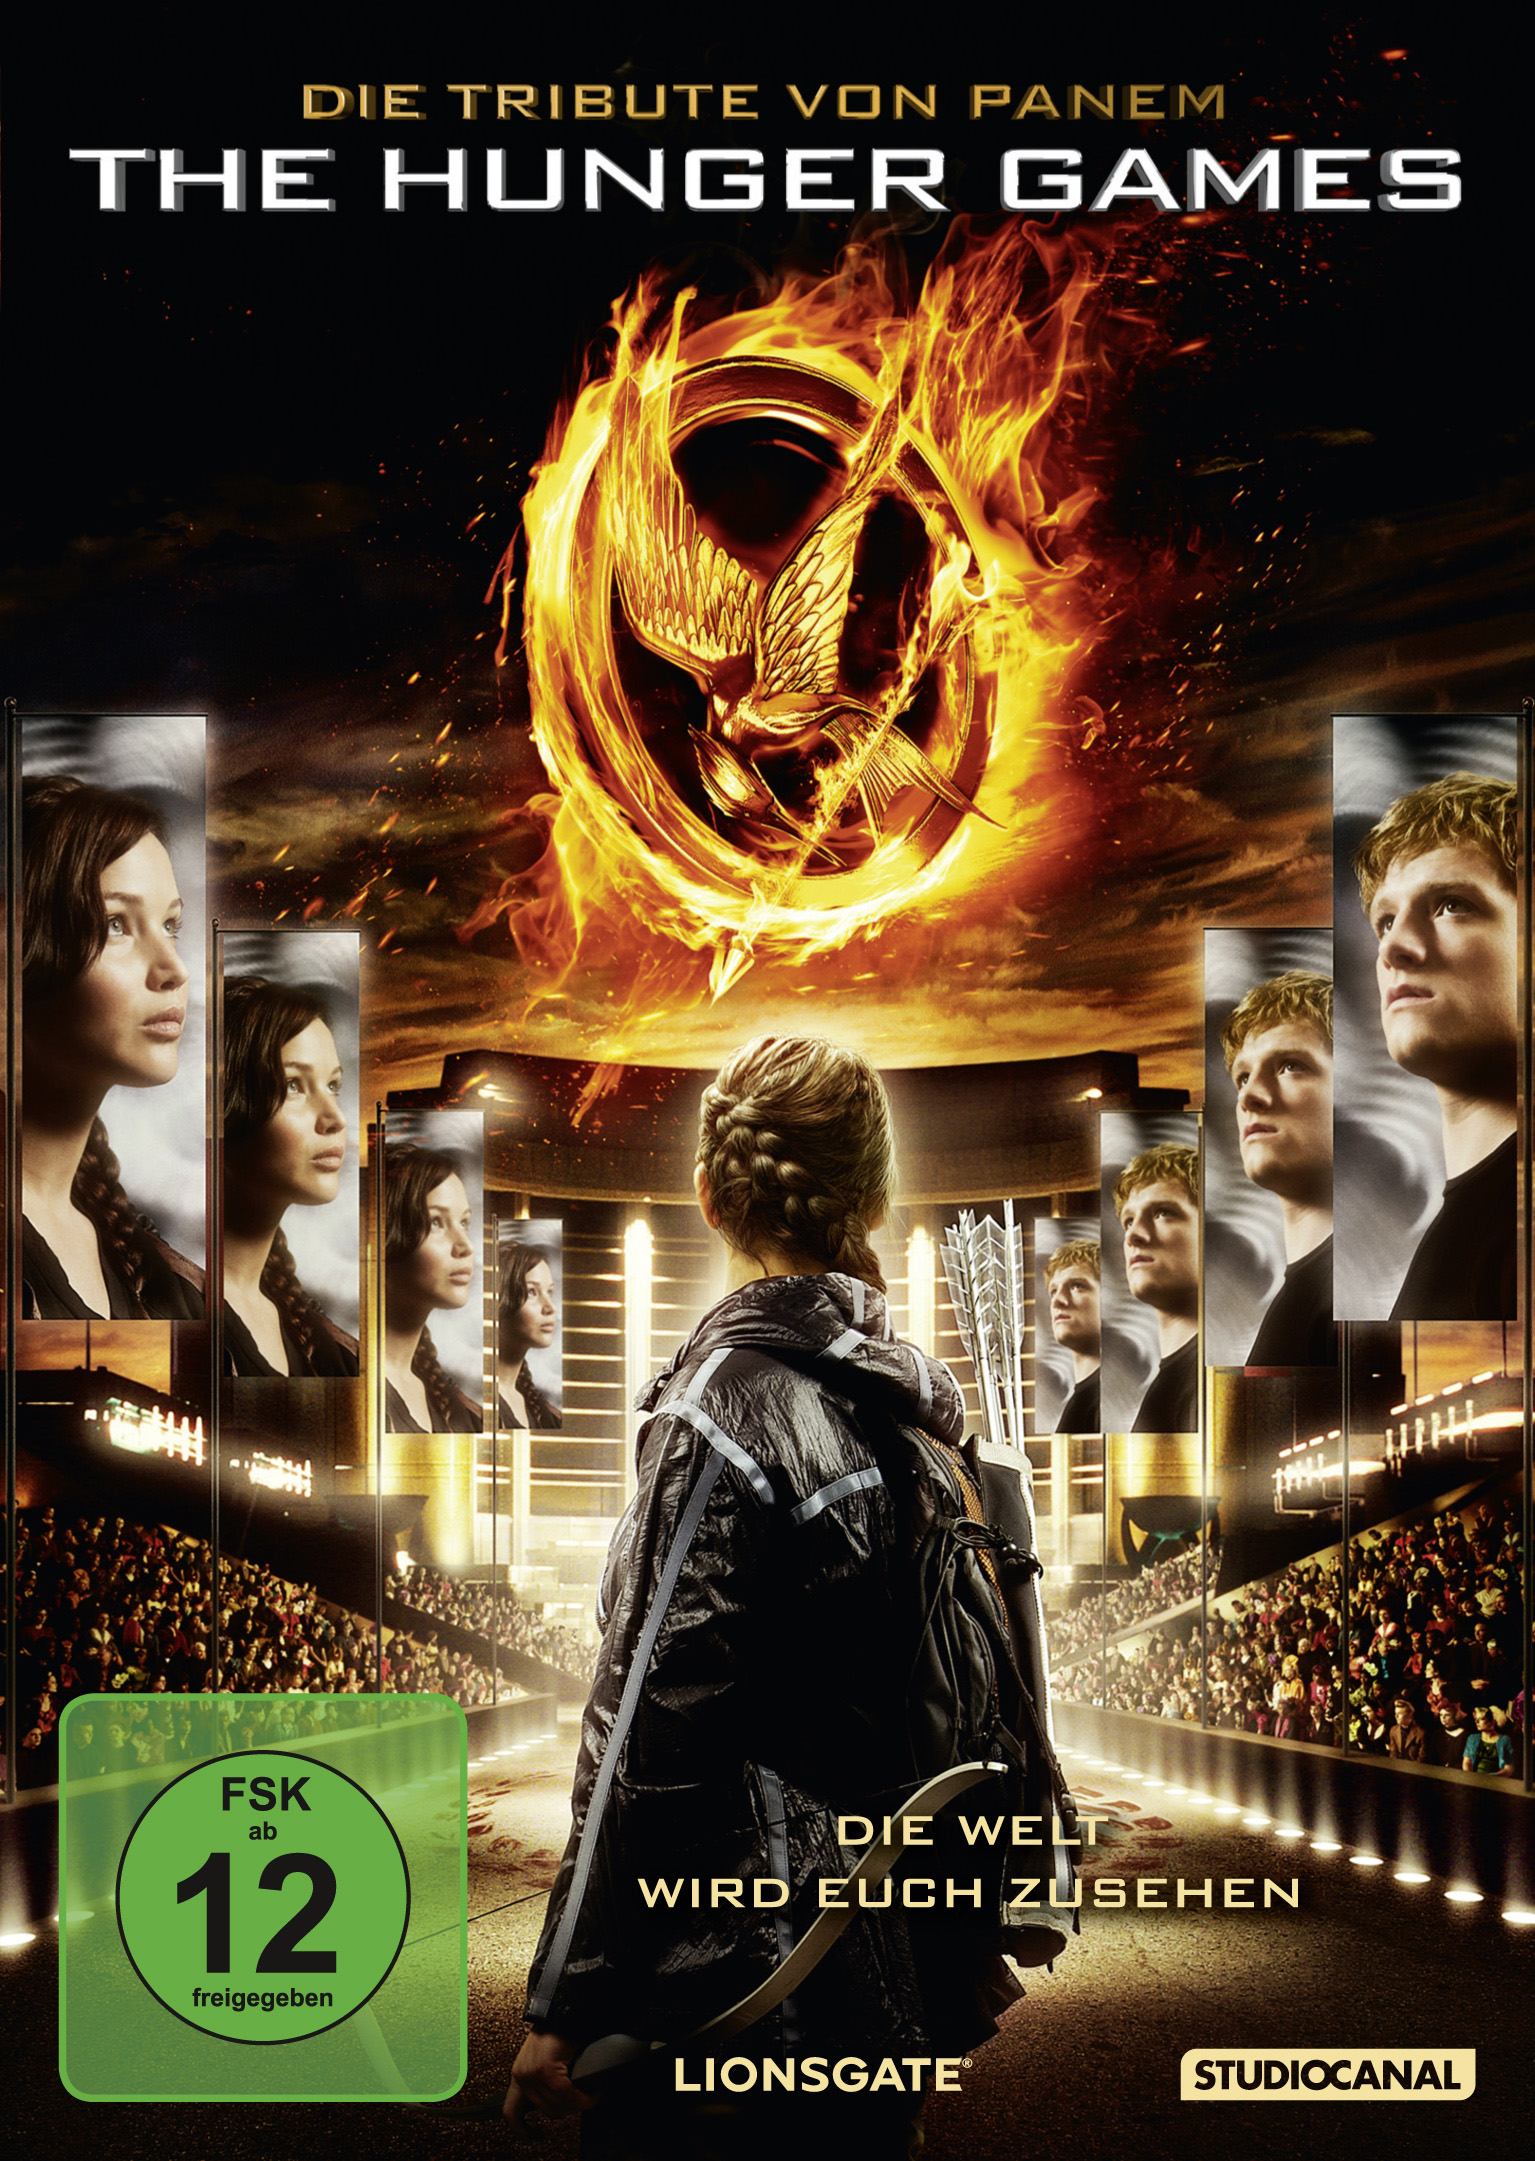 Die Tribute von Panem - DVD The Hunger Games